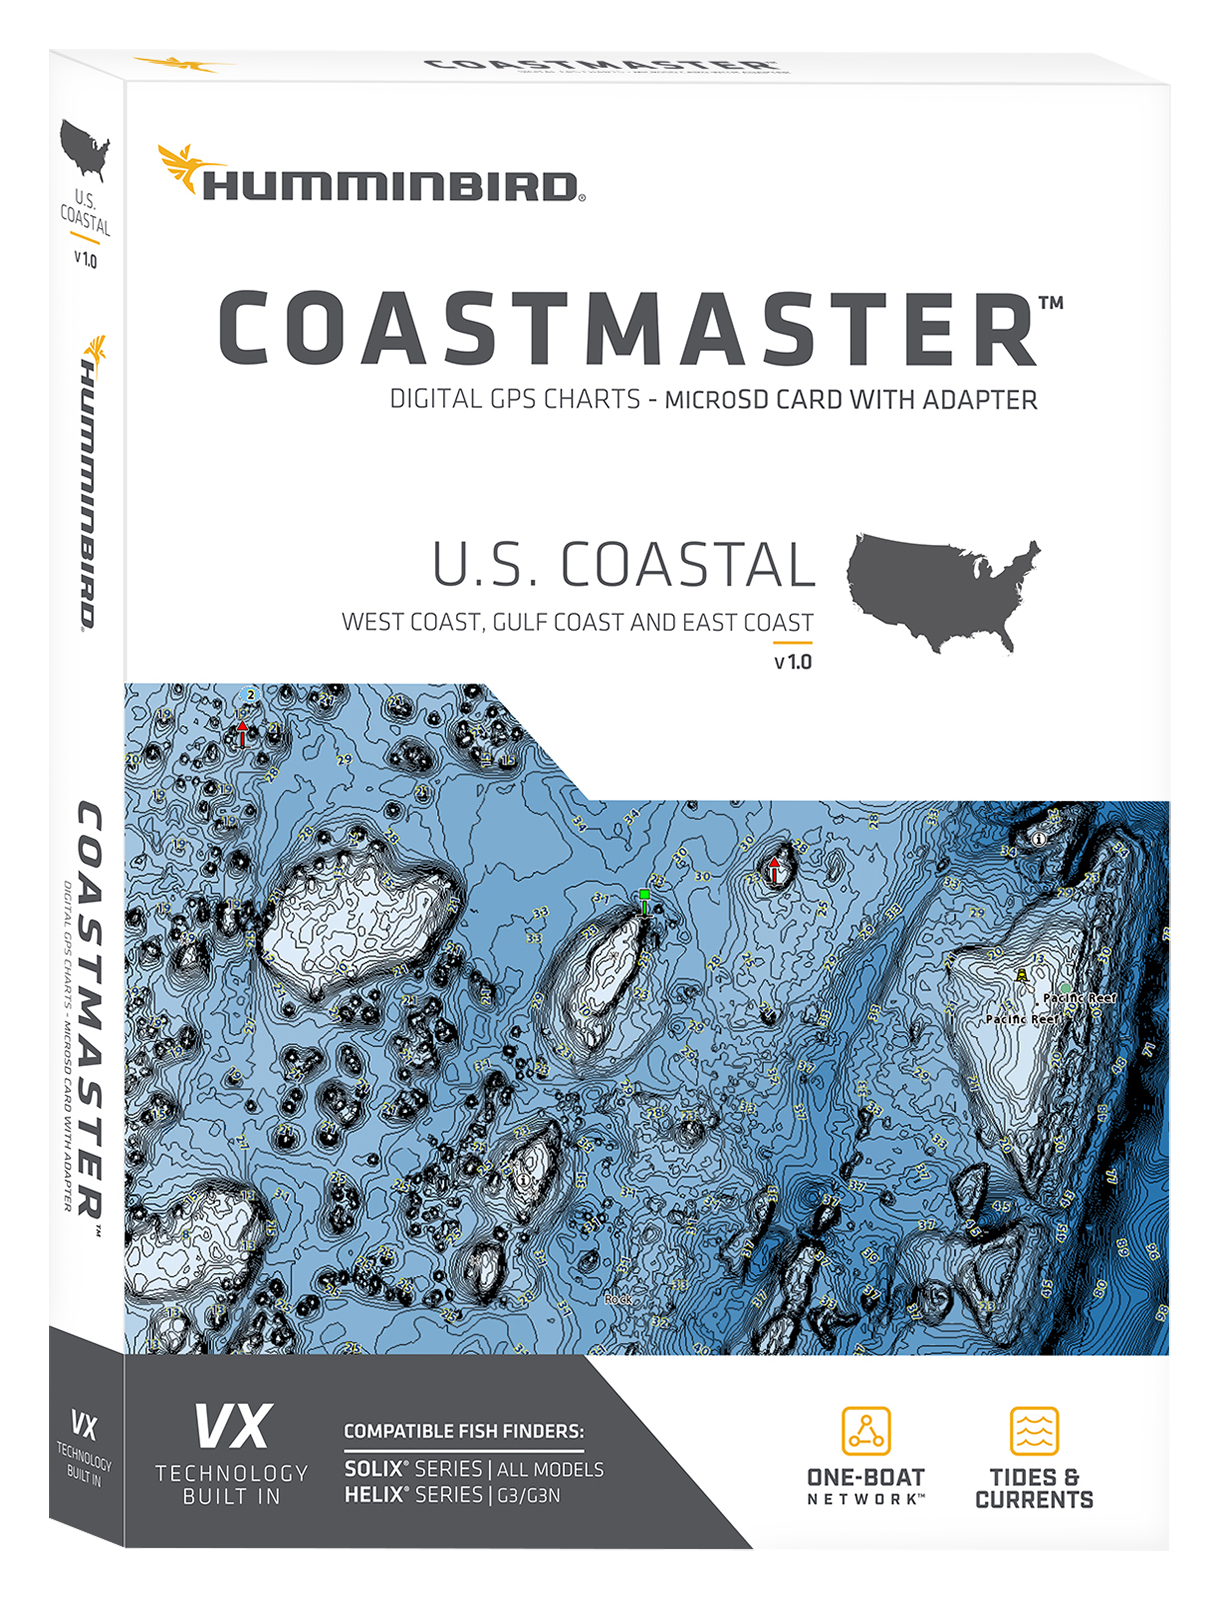 Hummminbird CoastMaster Digital Maps Card